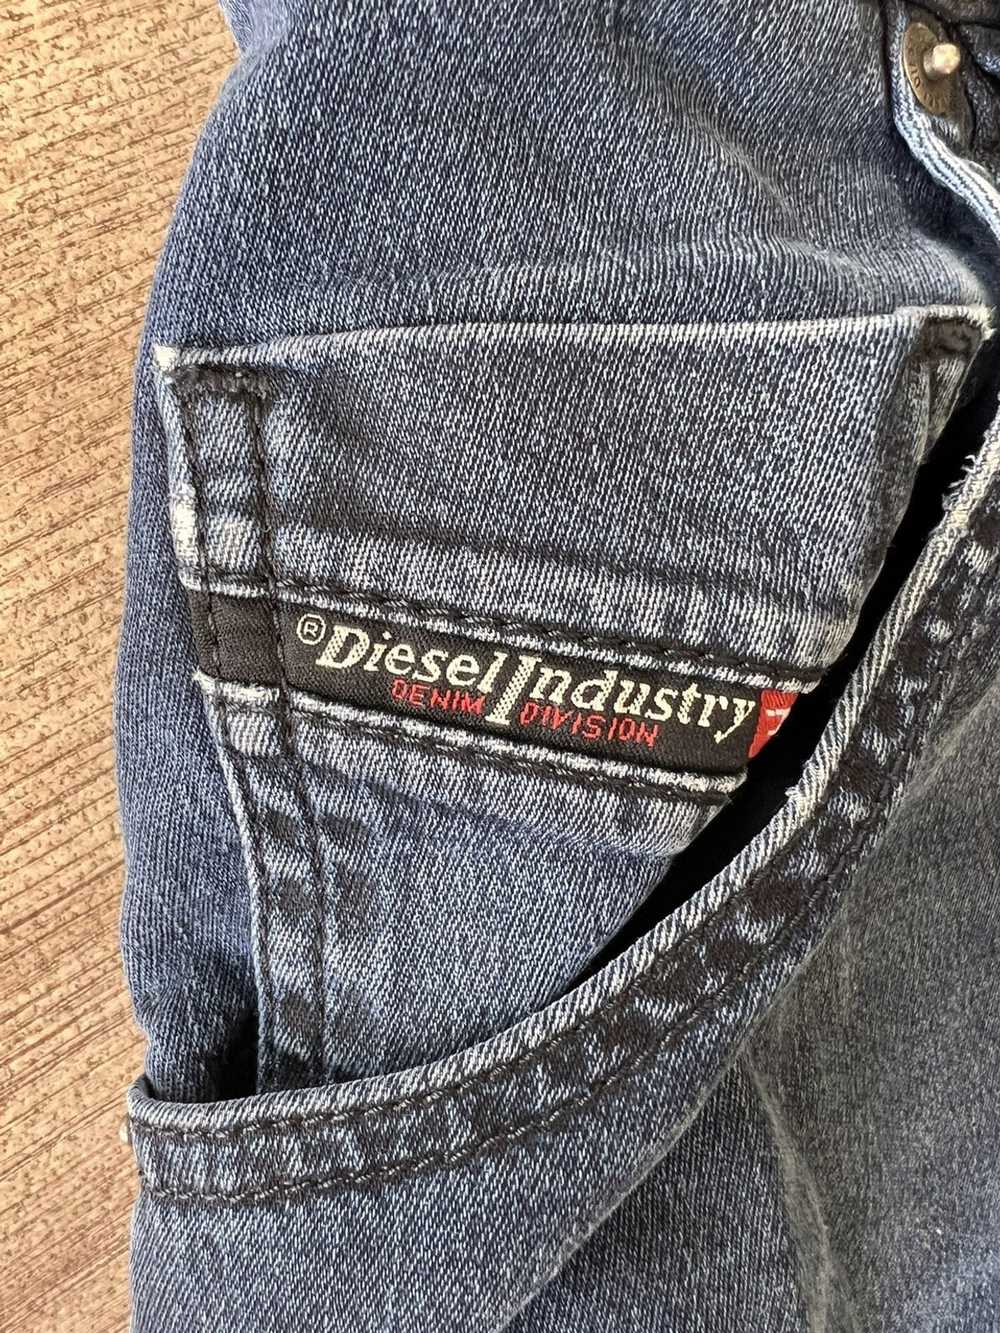 Diesel Diesel Elastic Jeans - image 3